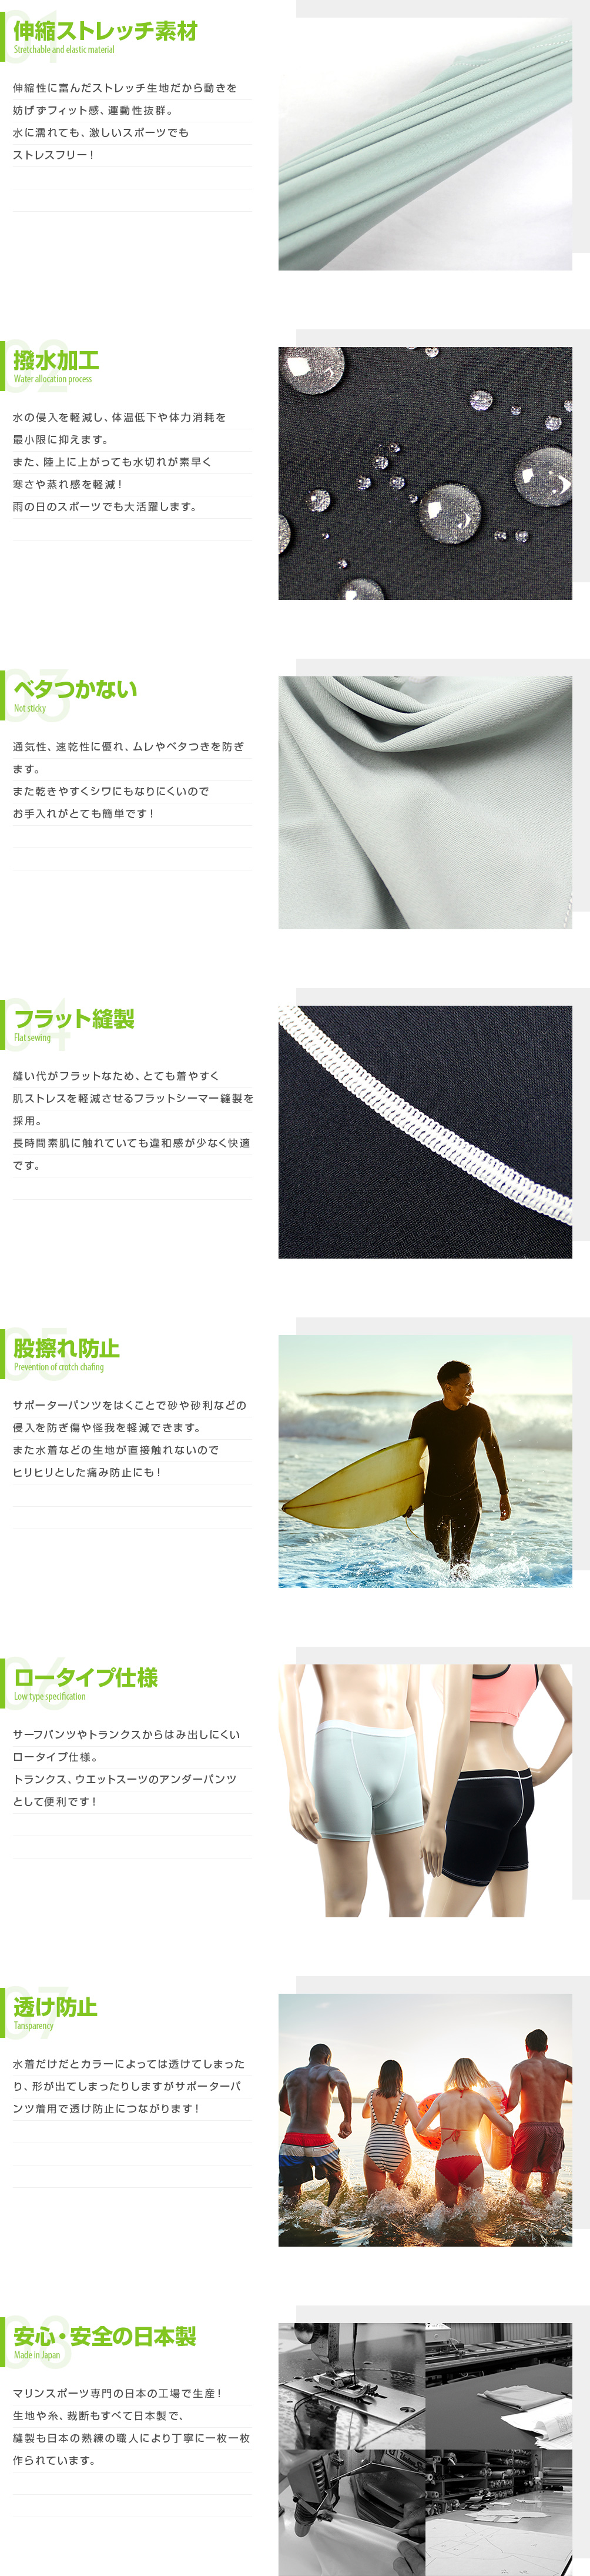 【楽天市場】【送料無料！】日本製 サポーターパンツ サーフィン ダイビング インナーパンツ アンダーパンツ 男女兼用 メンズ レディース インナーショーツ ボクサーパンツ型 スイムアンダー